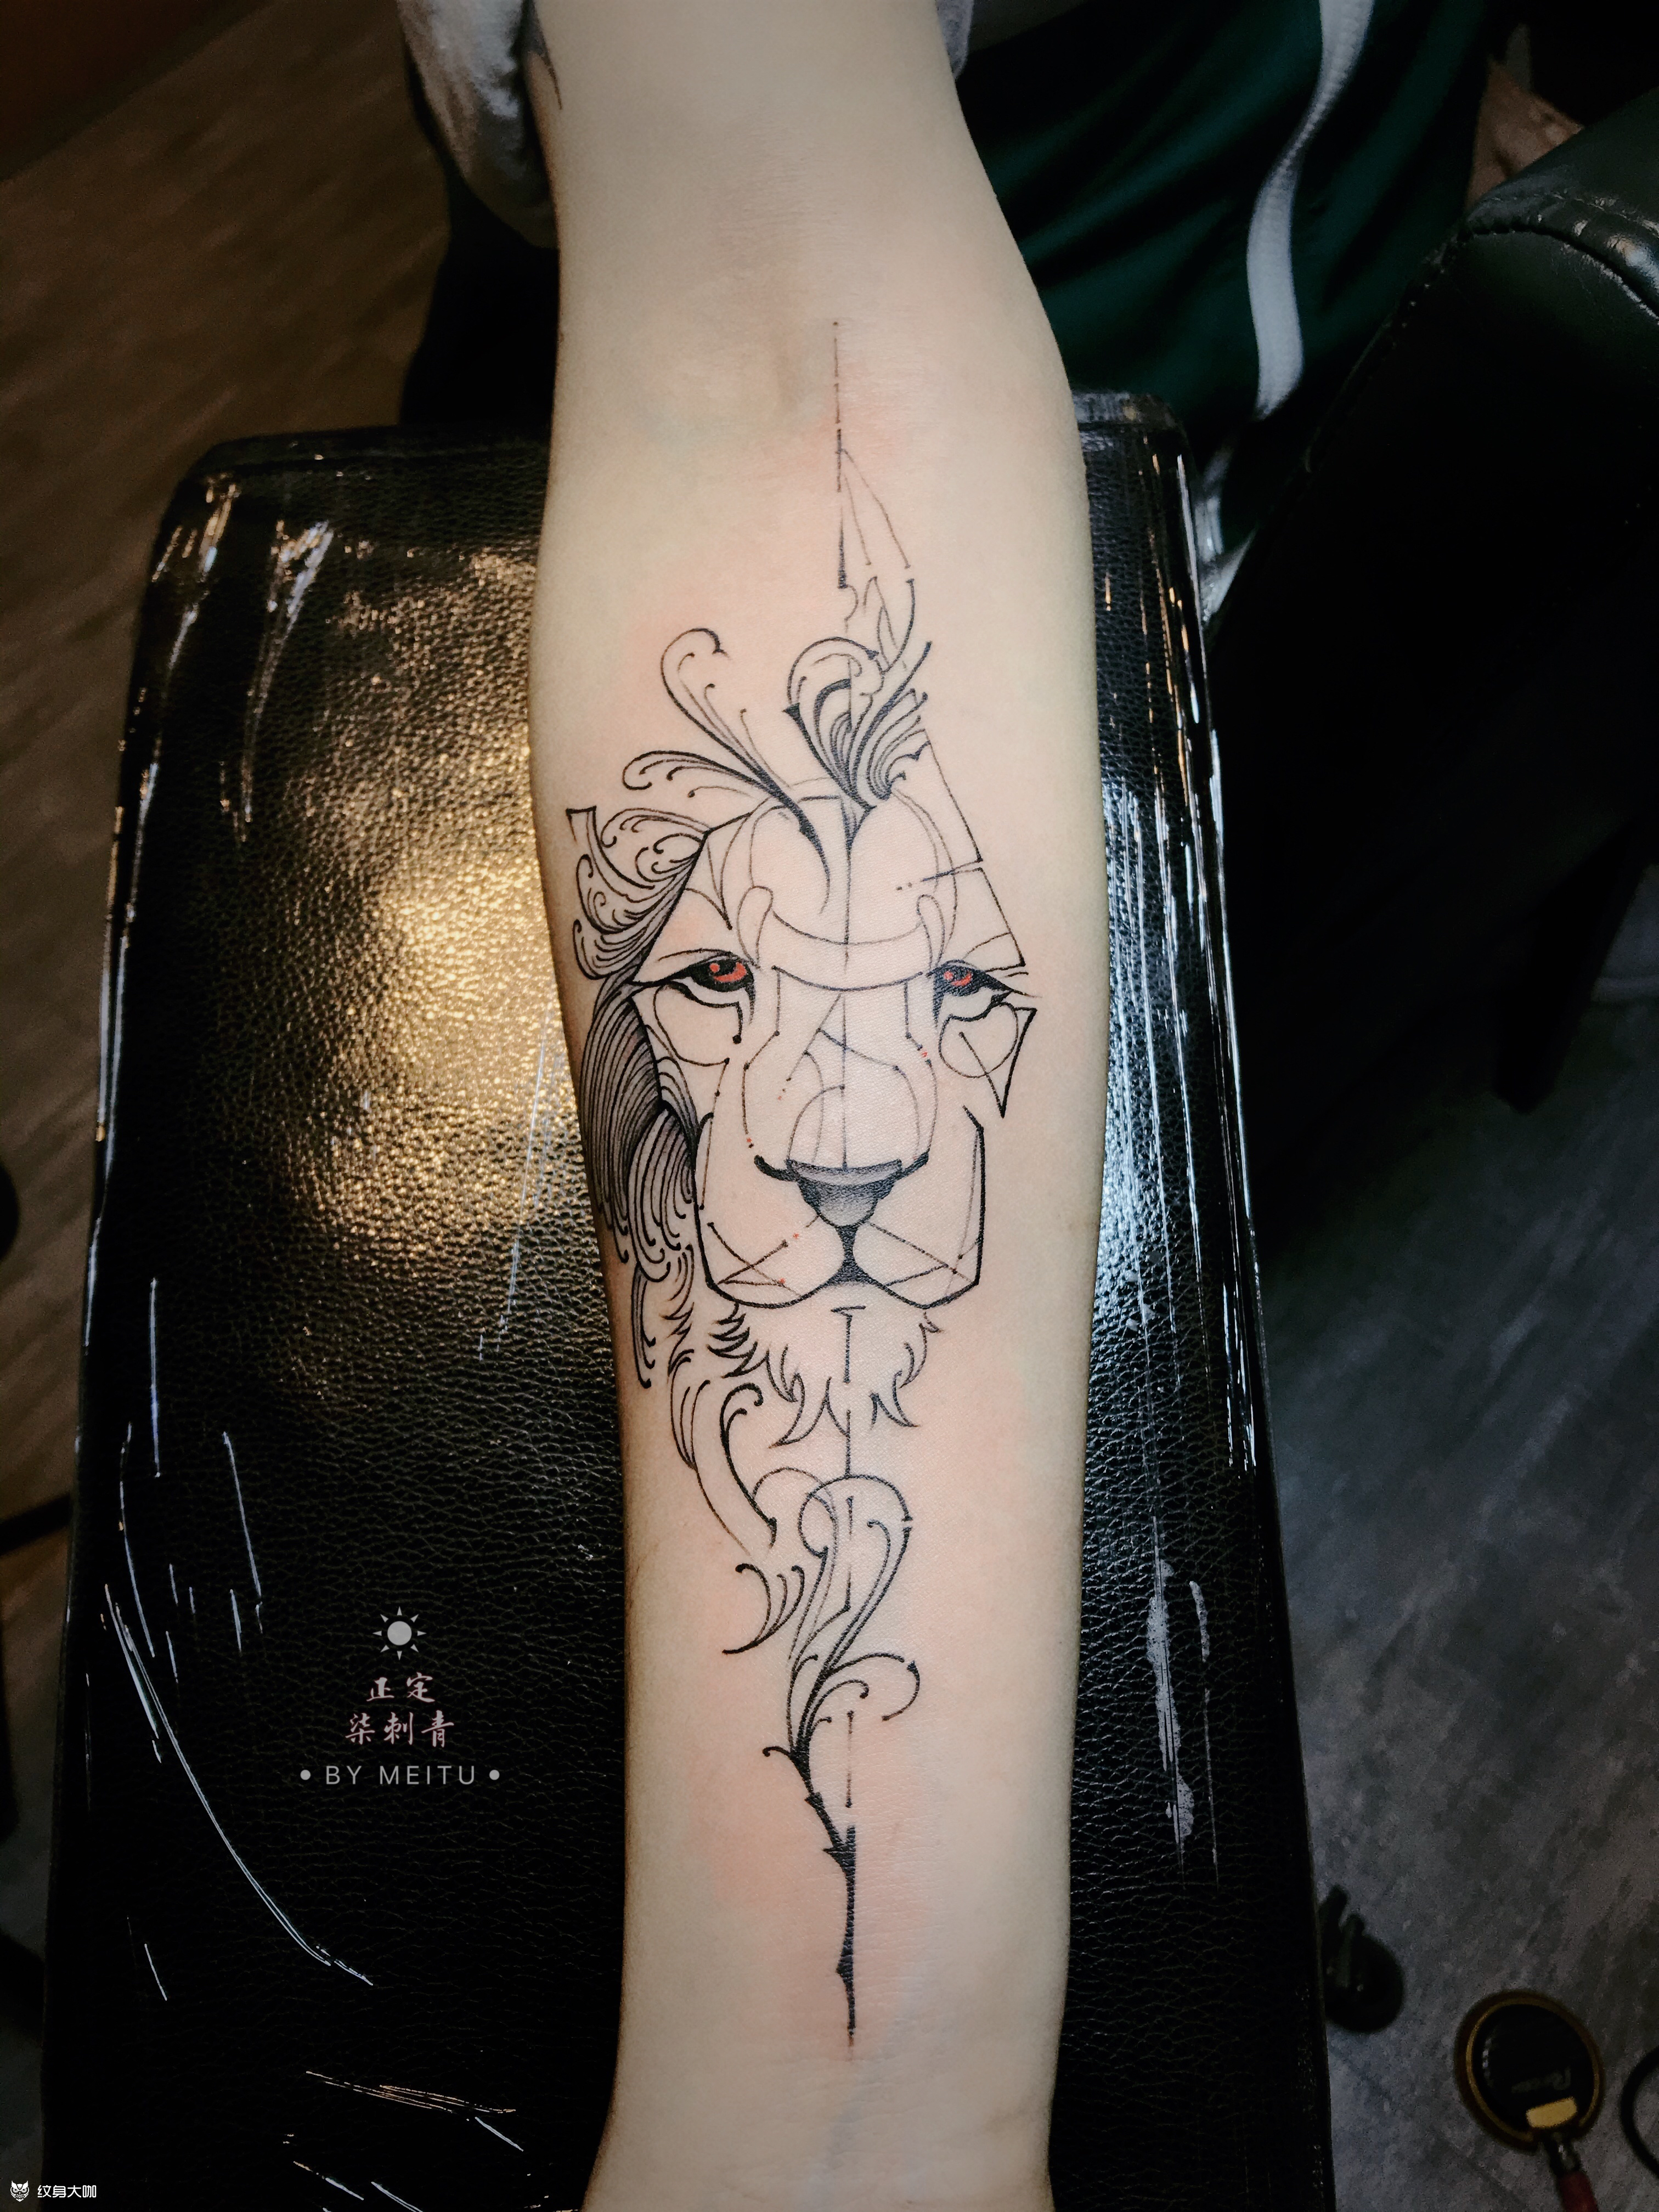 朴宰范狮子纹身图案图片